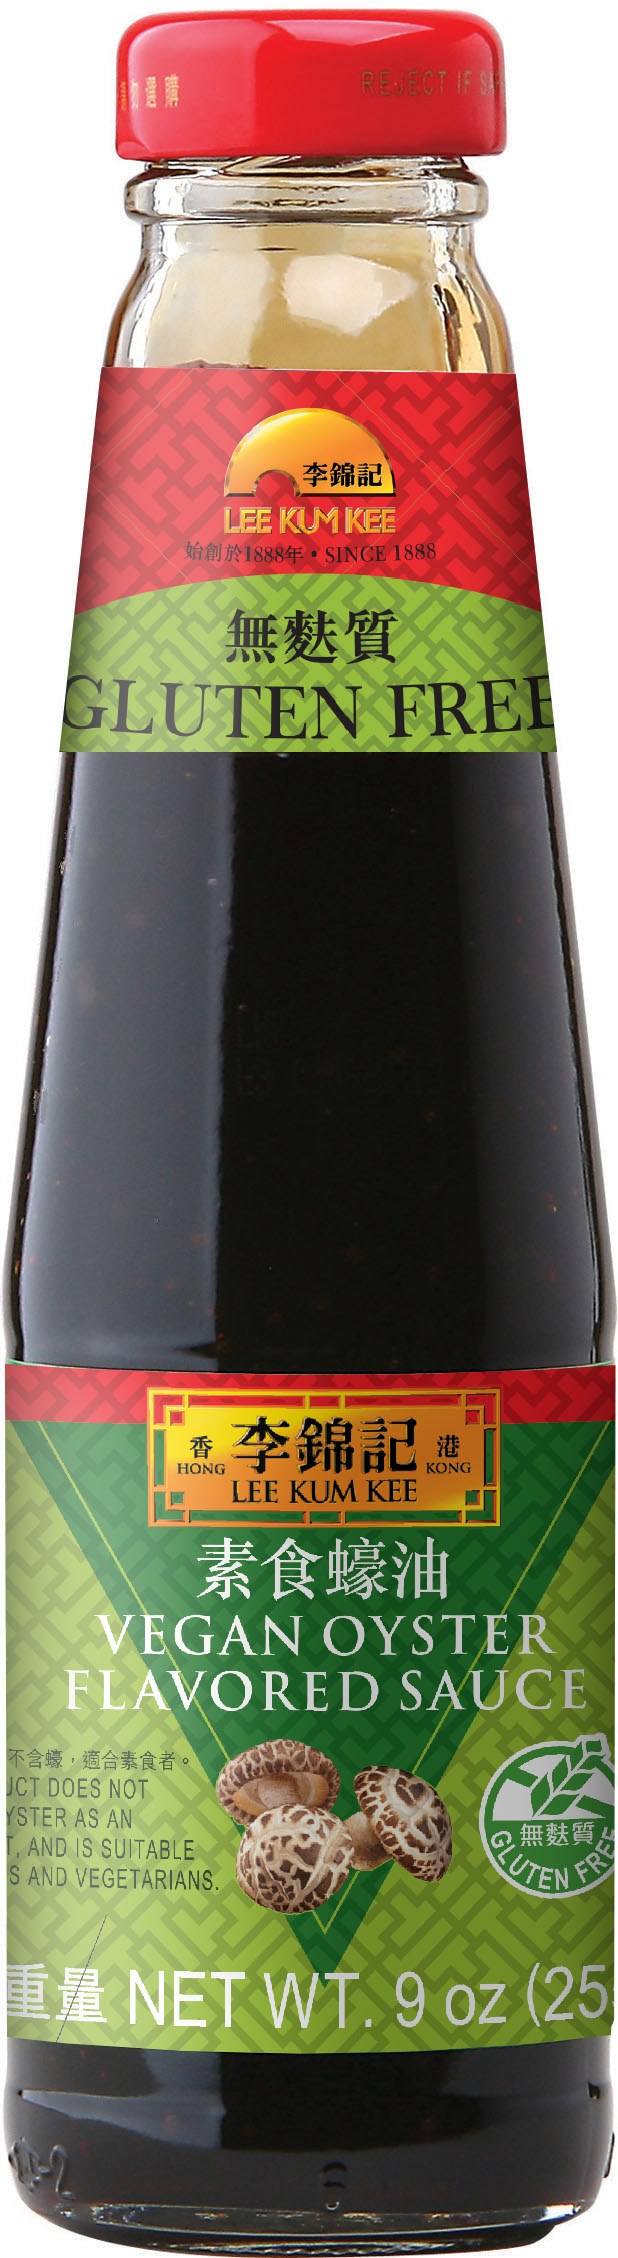 Vegan Oyster Flavored Sauce 9 oz (255g), Bottle